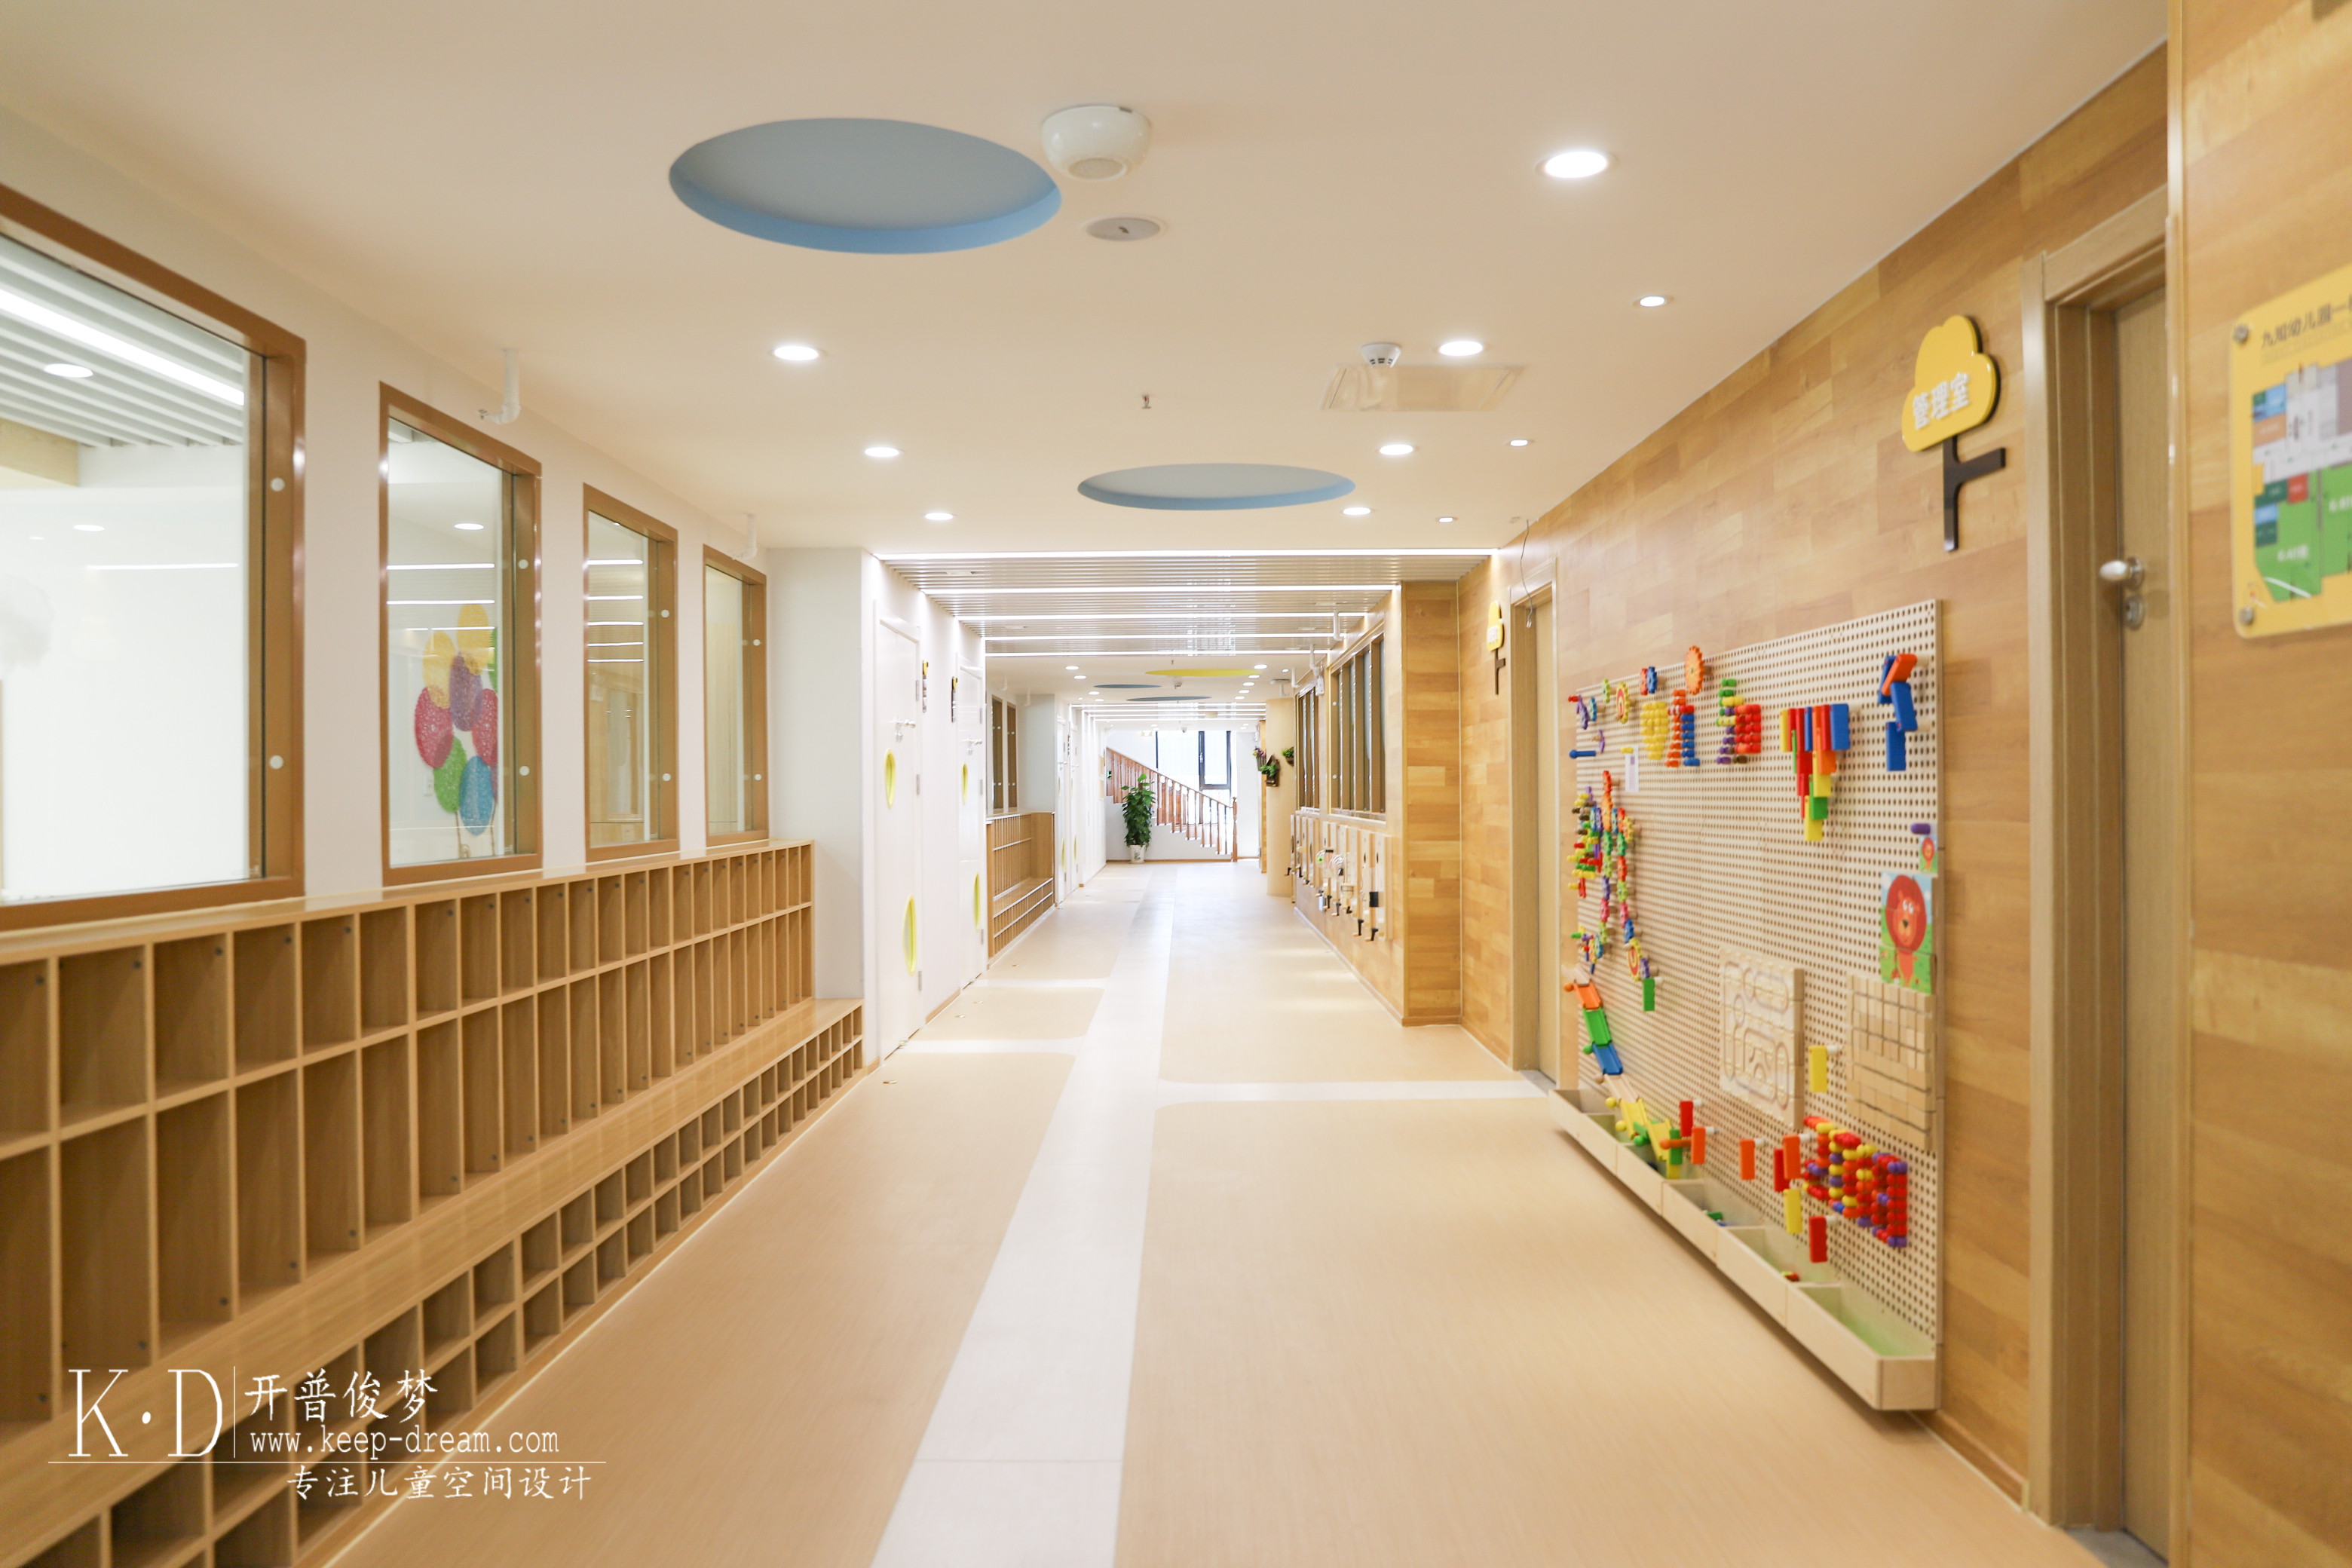 幼儿园室内设计:这样有趣的走廊空间设计装修!